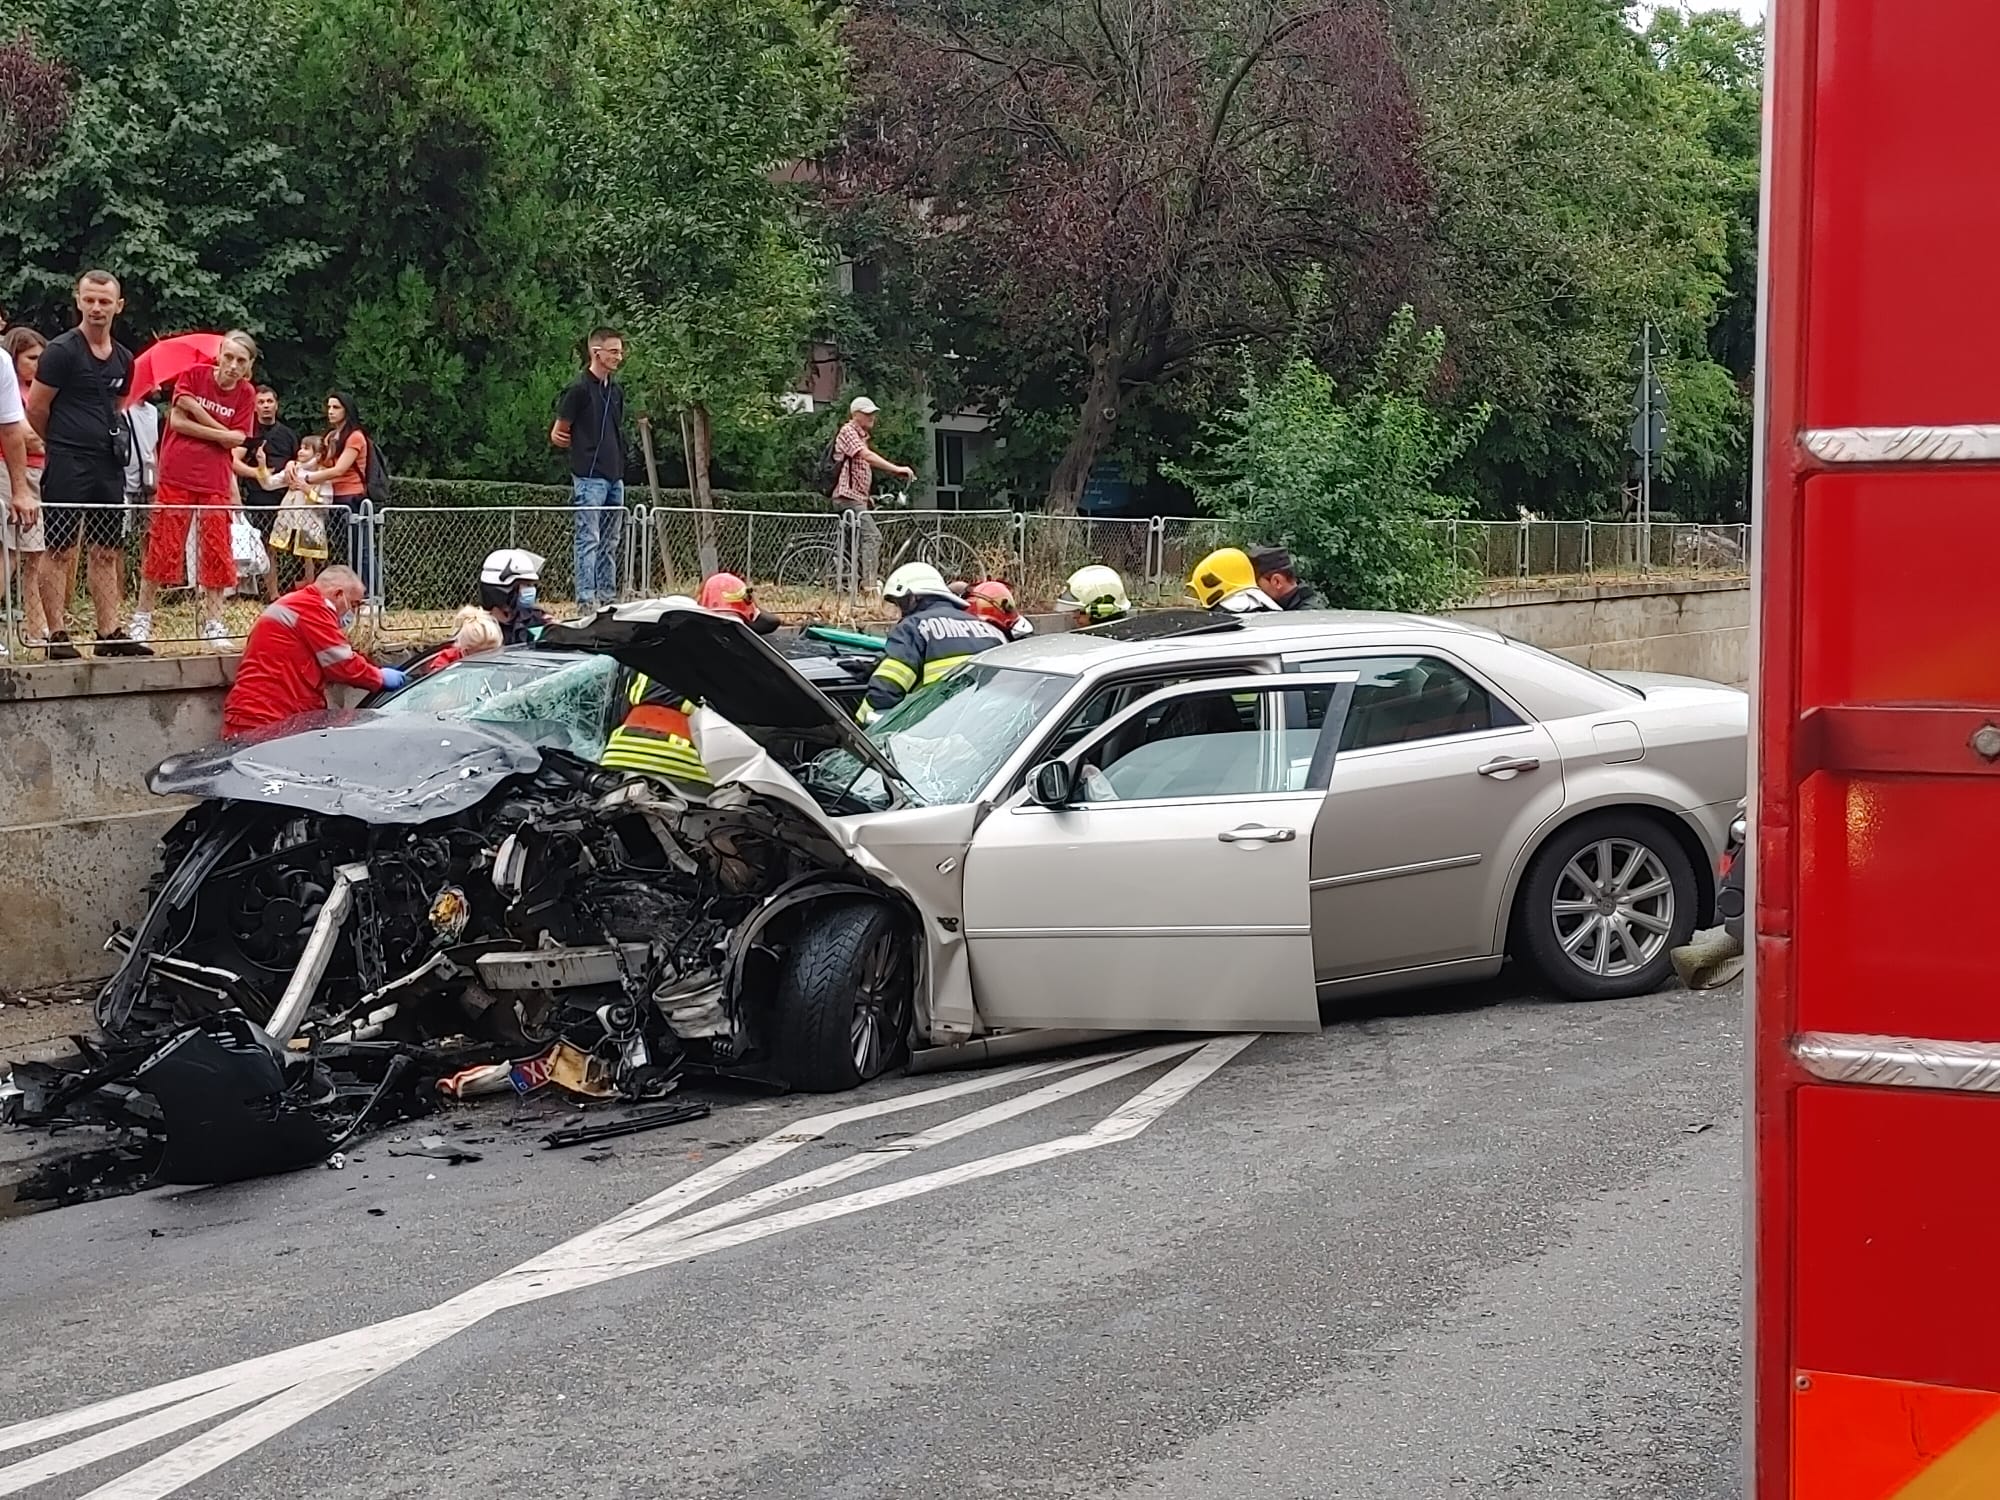 FOTO: Accident Dacia 17.08.2021